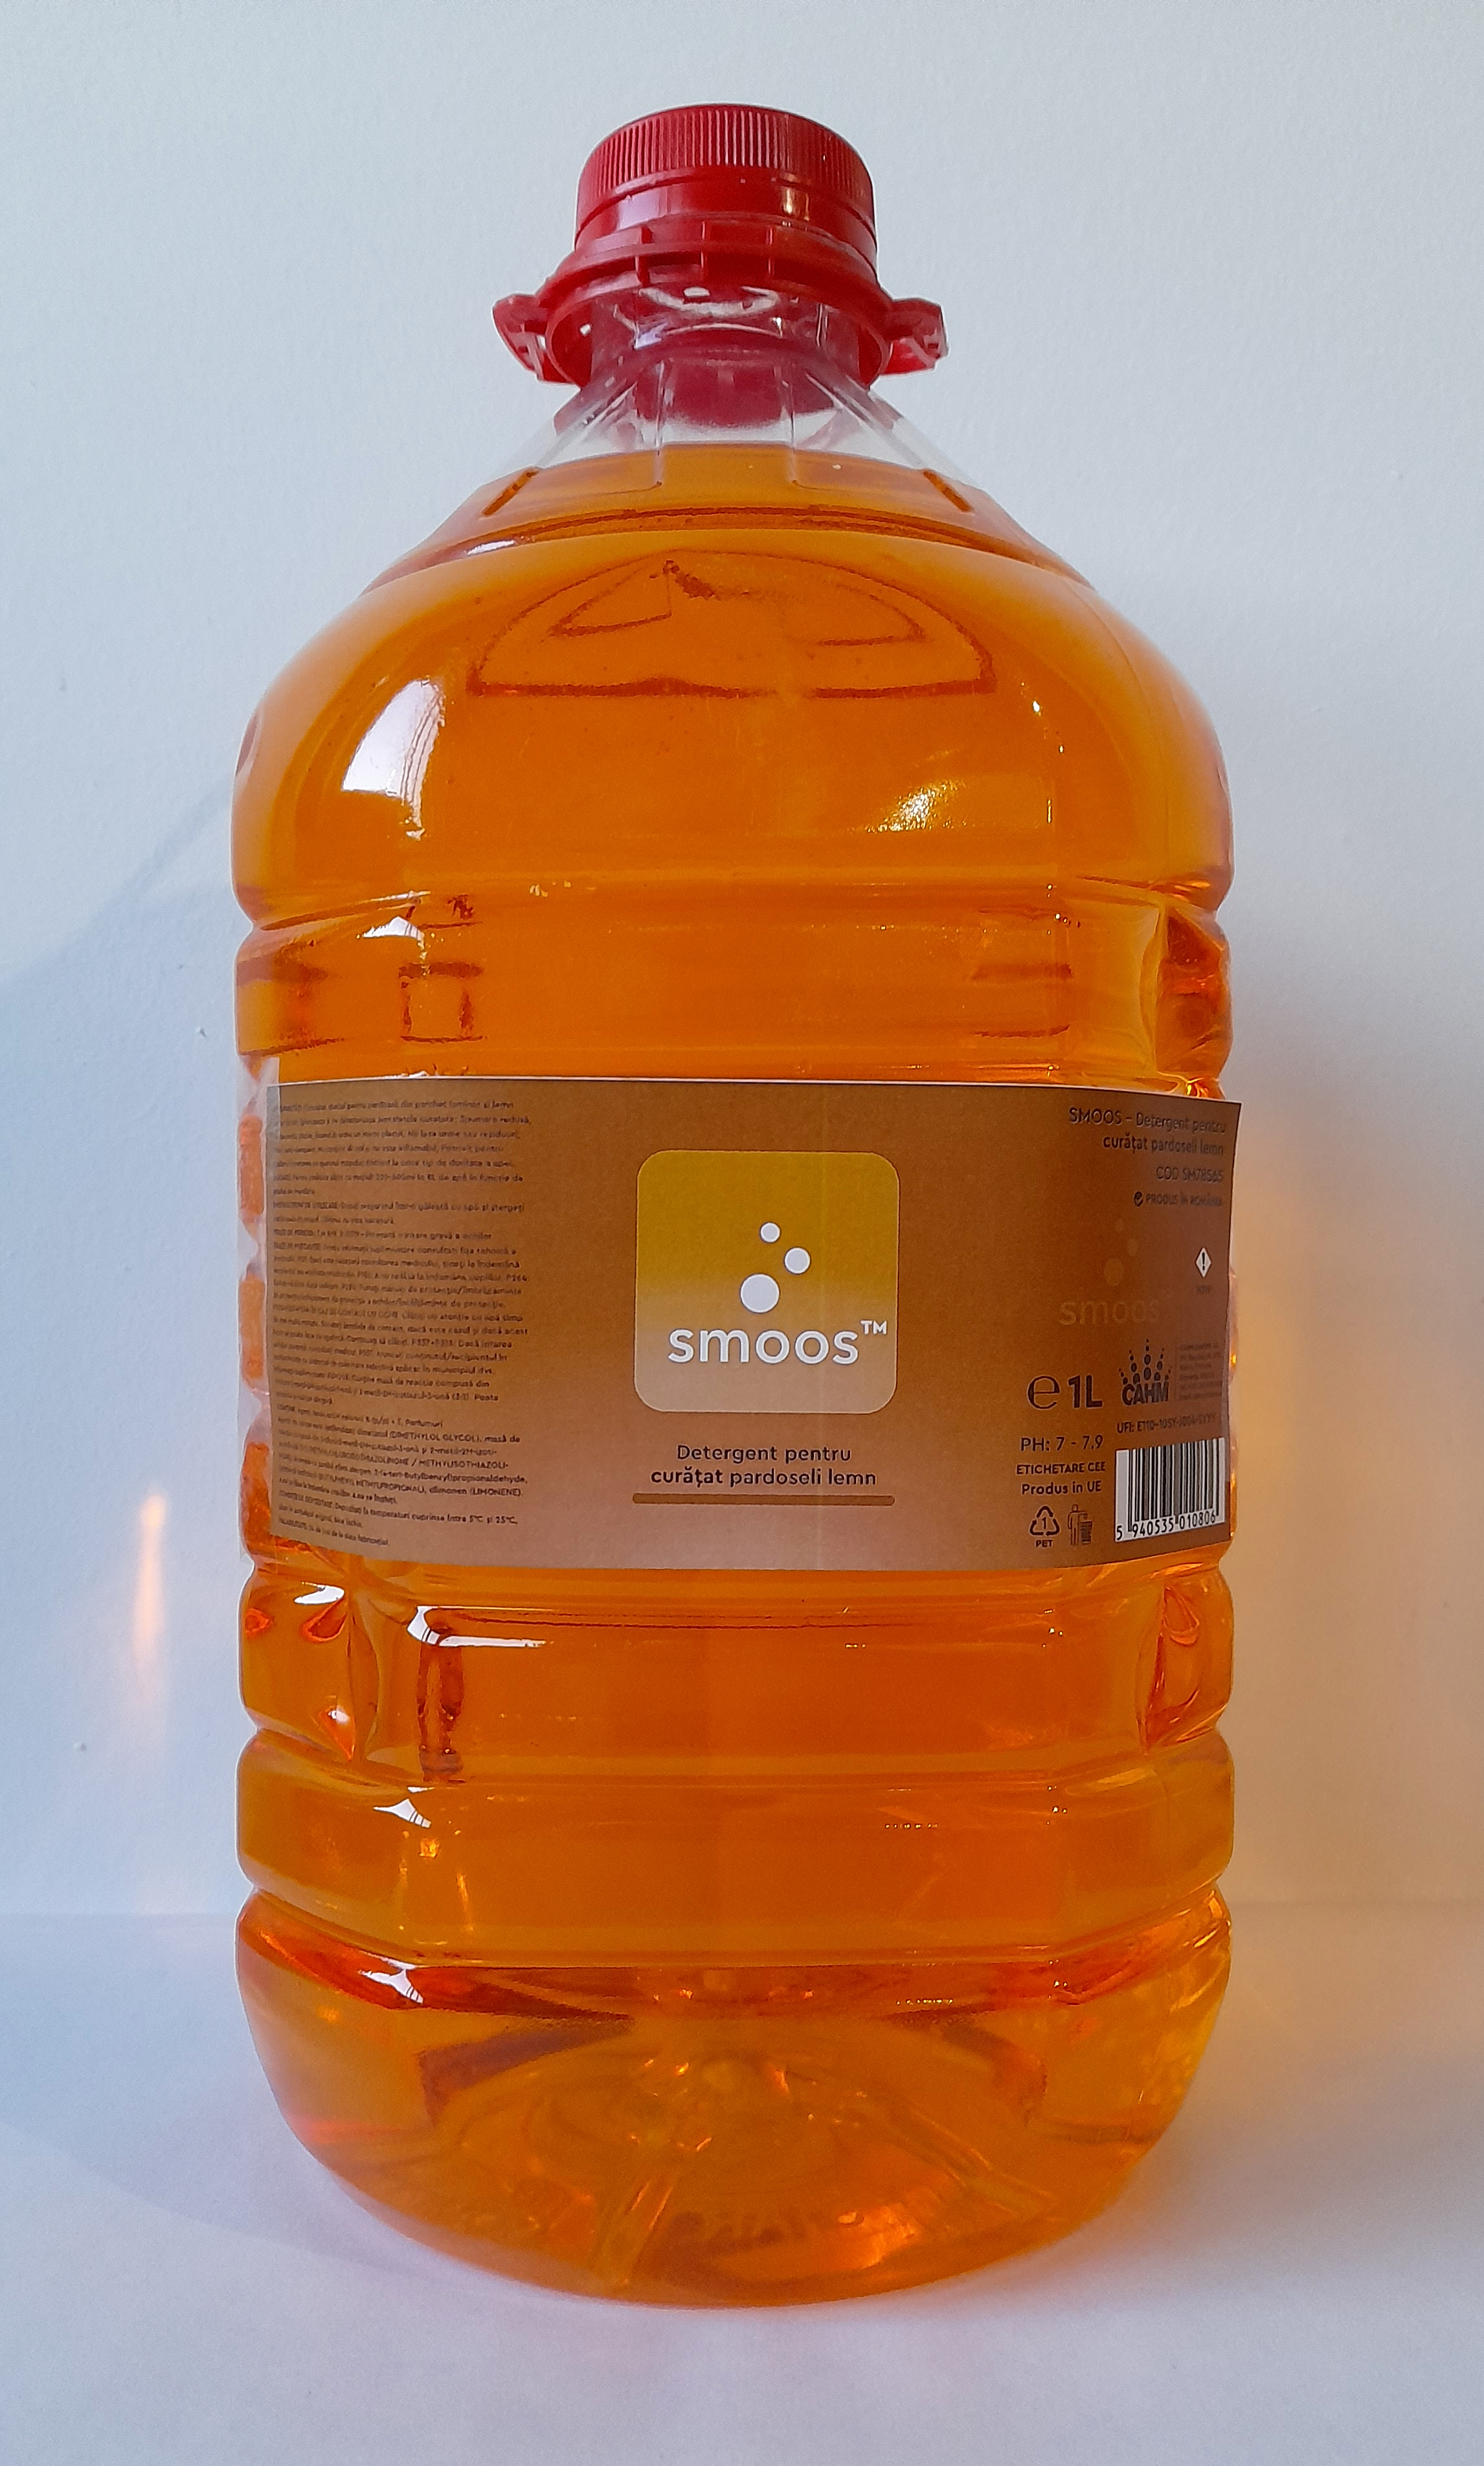 Smoos - Detergent pentru curatat pardoseli lemn 5L ( SM78565 )